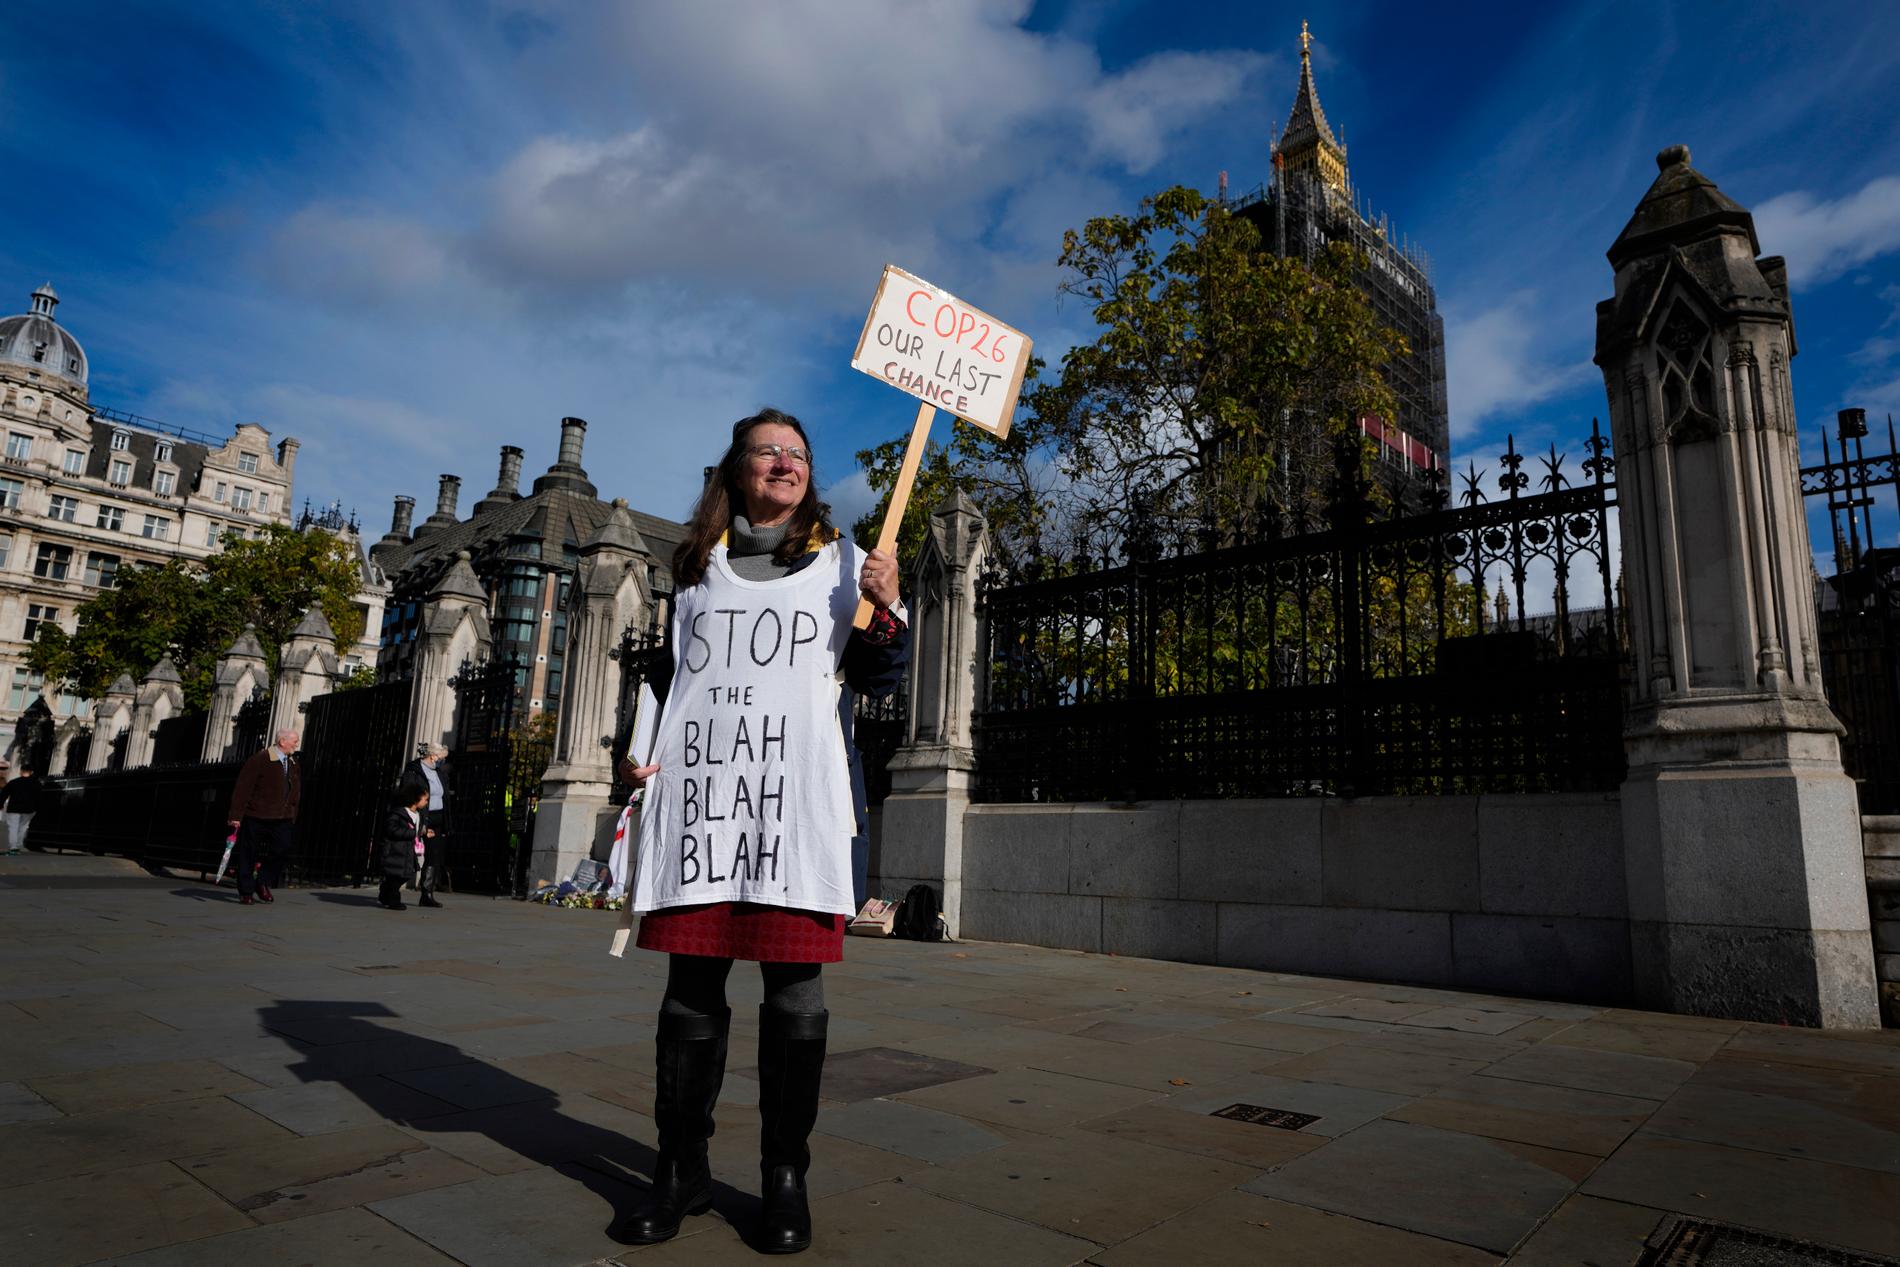 En kvinna demonstrerar inför klimatmötet utanför parlamentet i London under paroll ”Stop the blah, blah, blah”. 